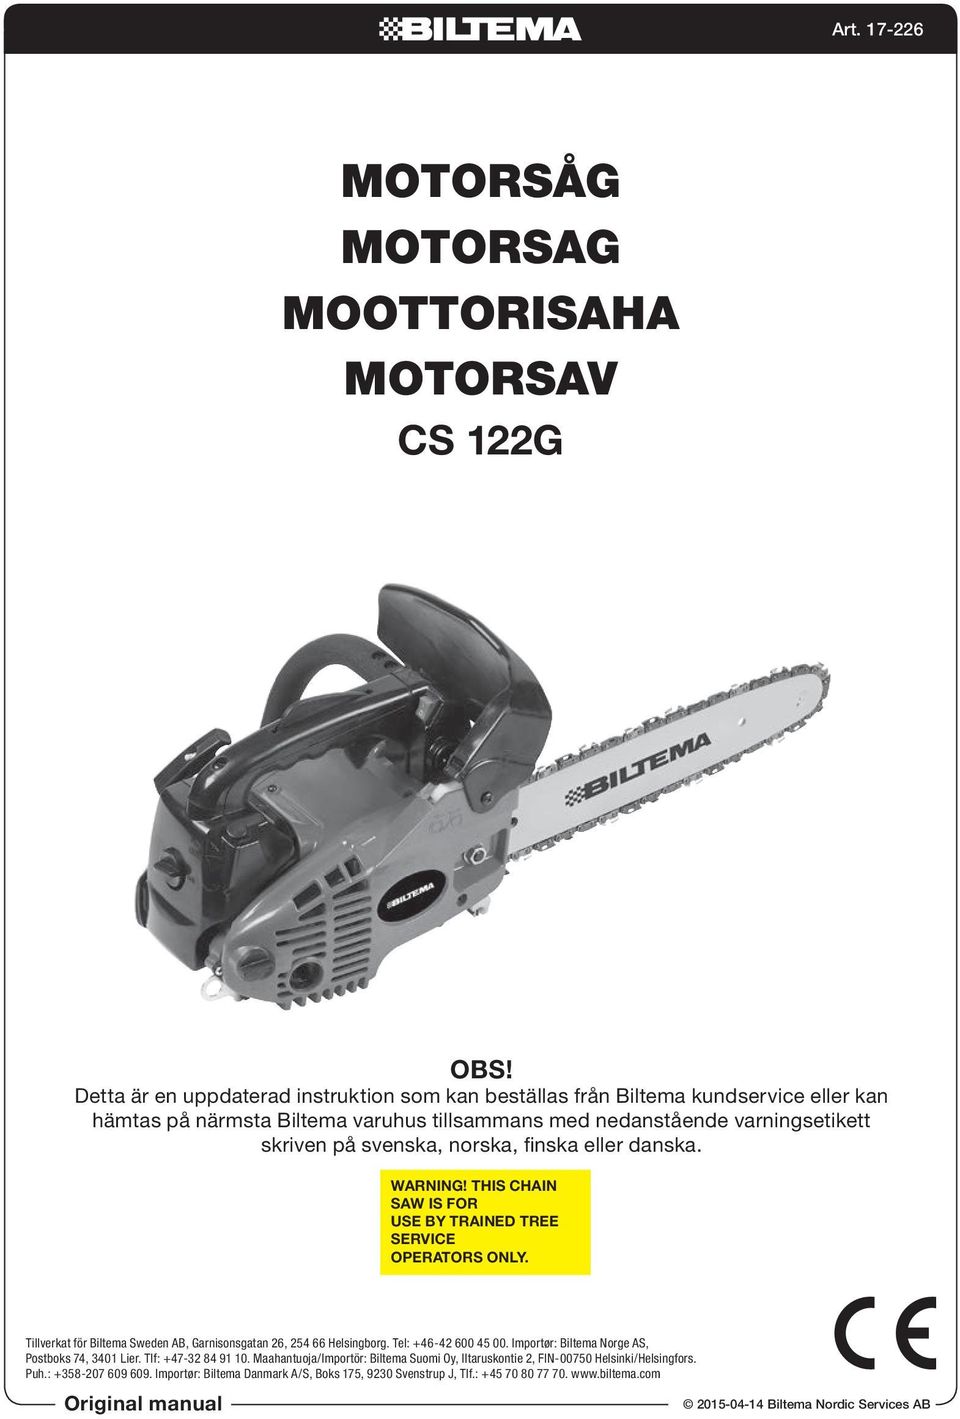 MOTORSÅG MOTORSAG MOOTTORISAHA MOTORSAV - PDF Free Download